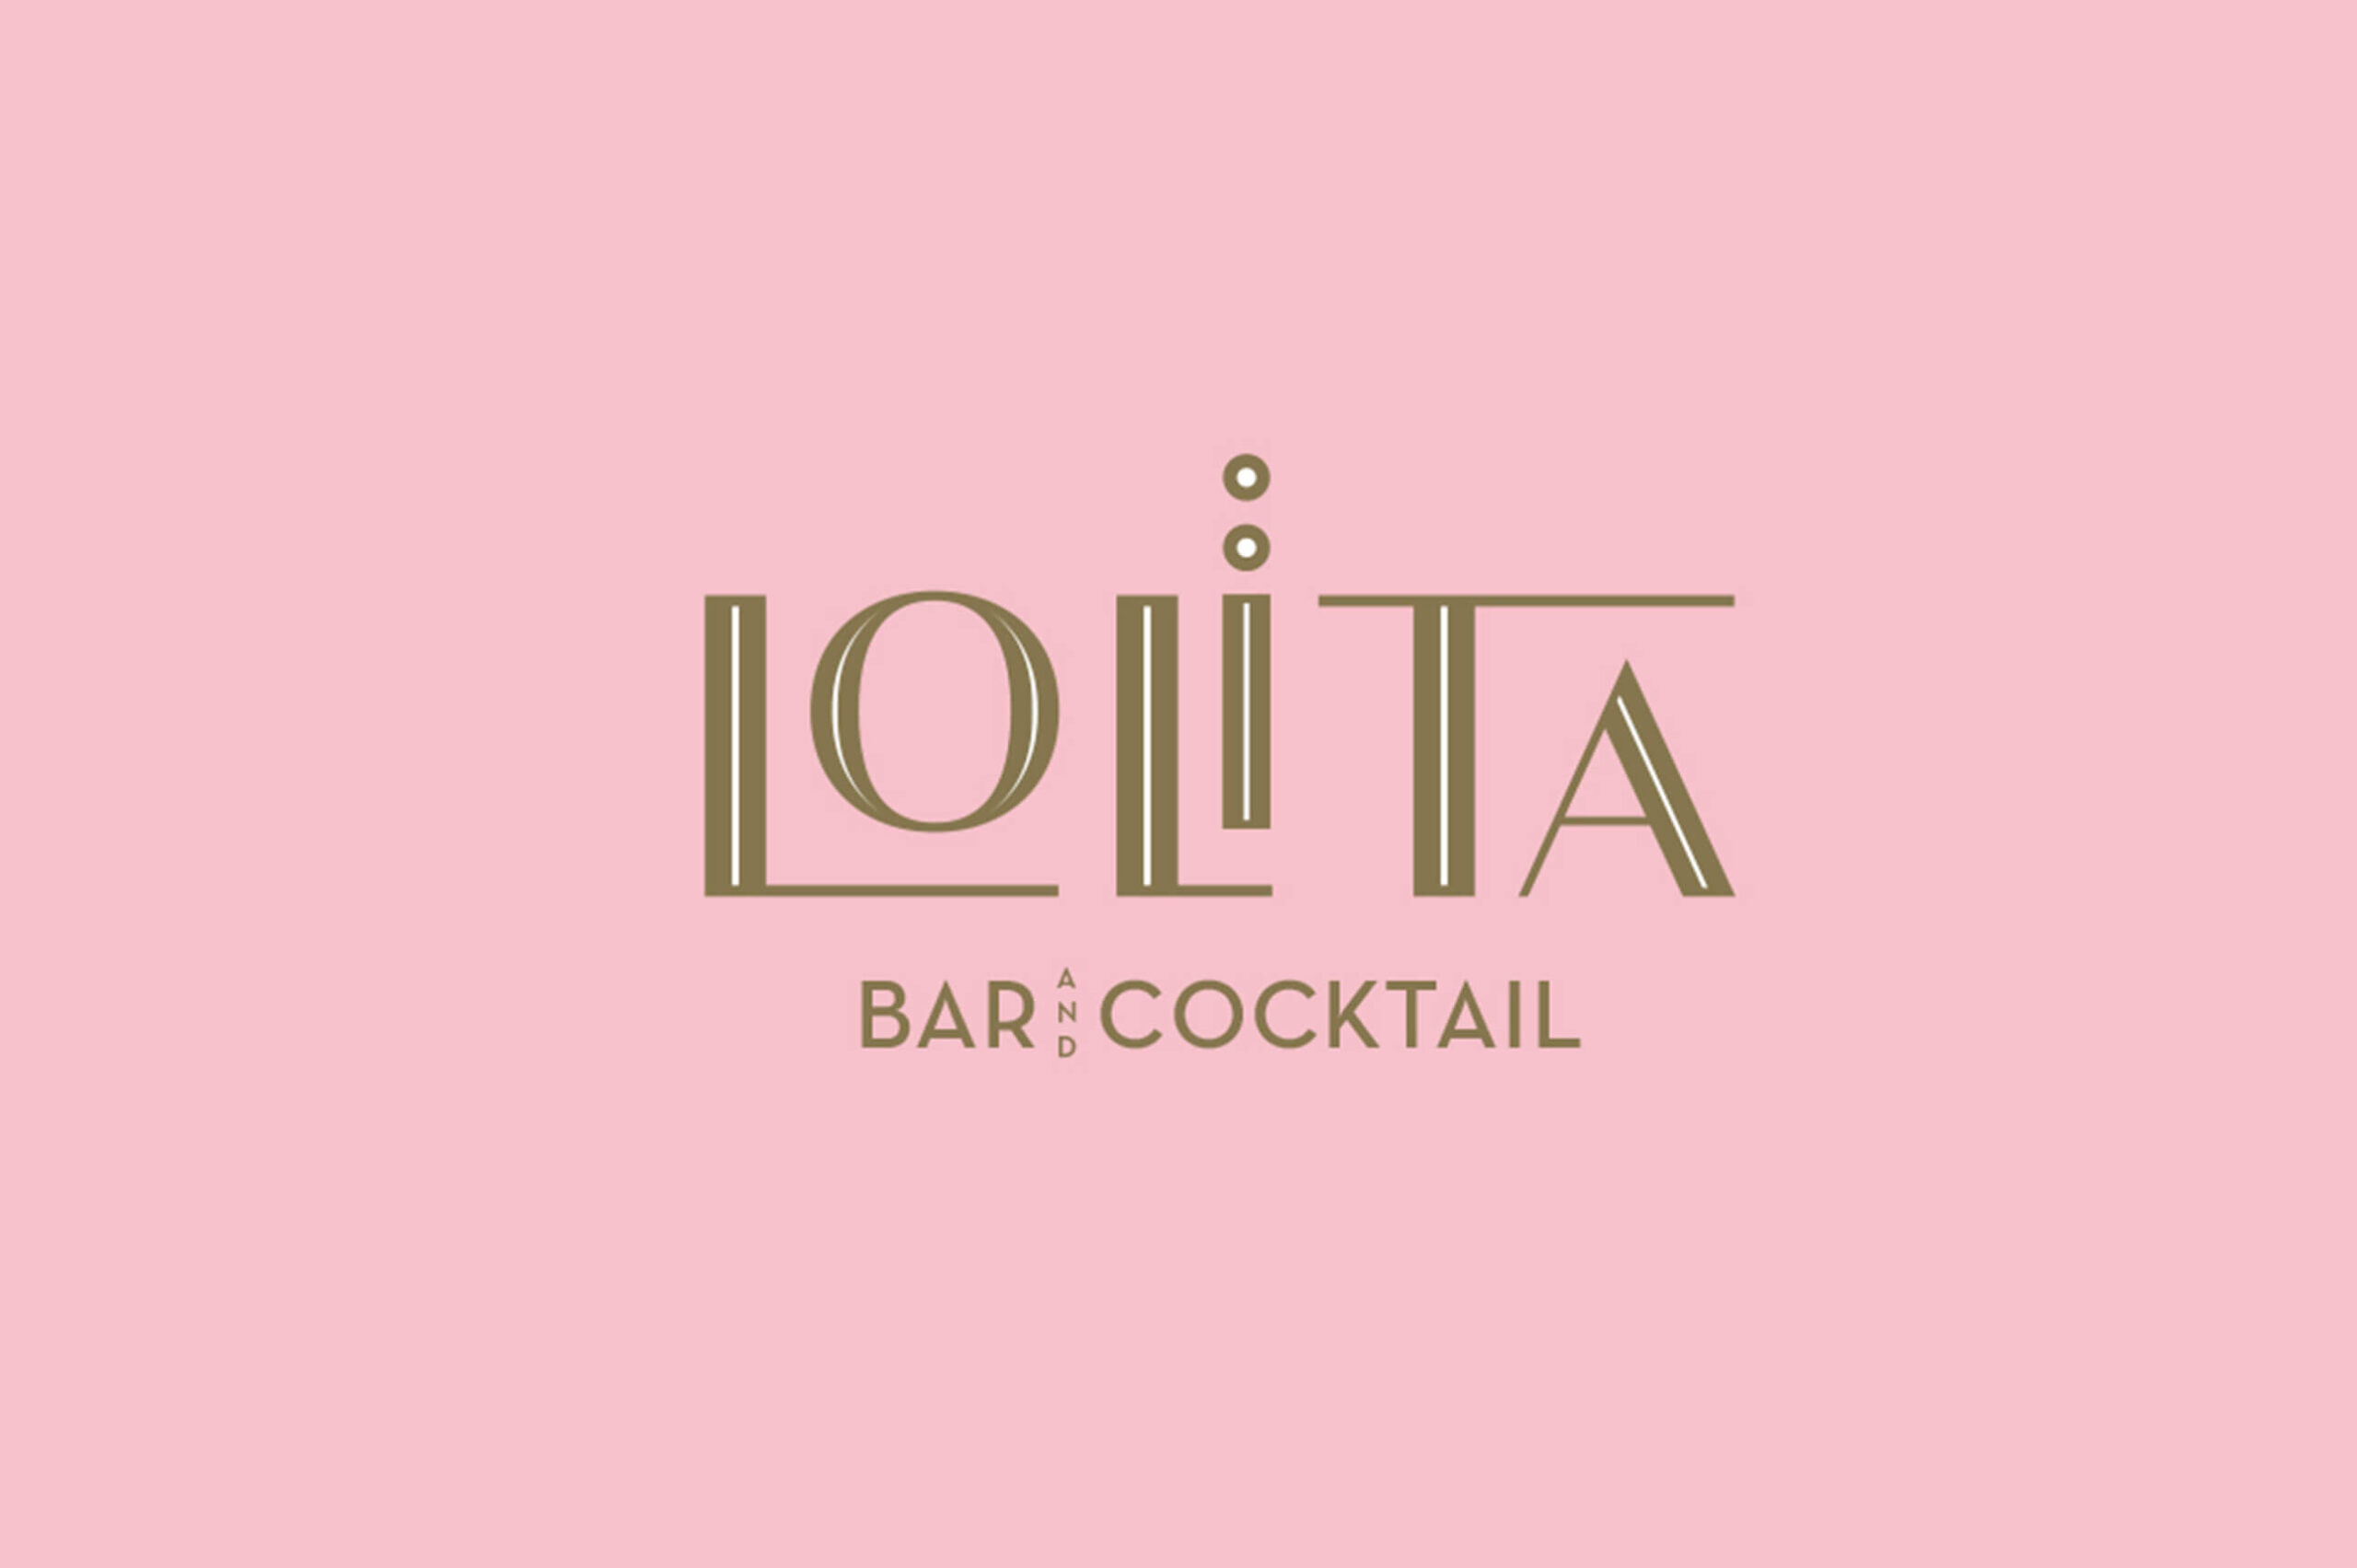 Lolita Bar & Cocktail